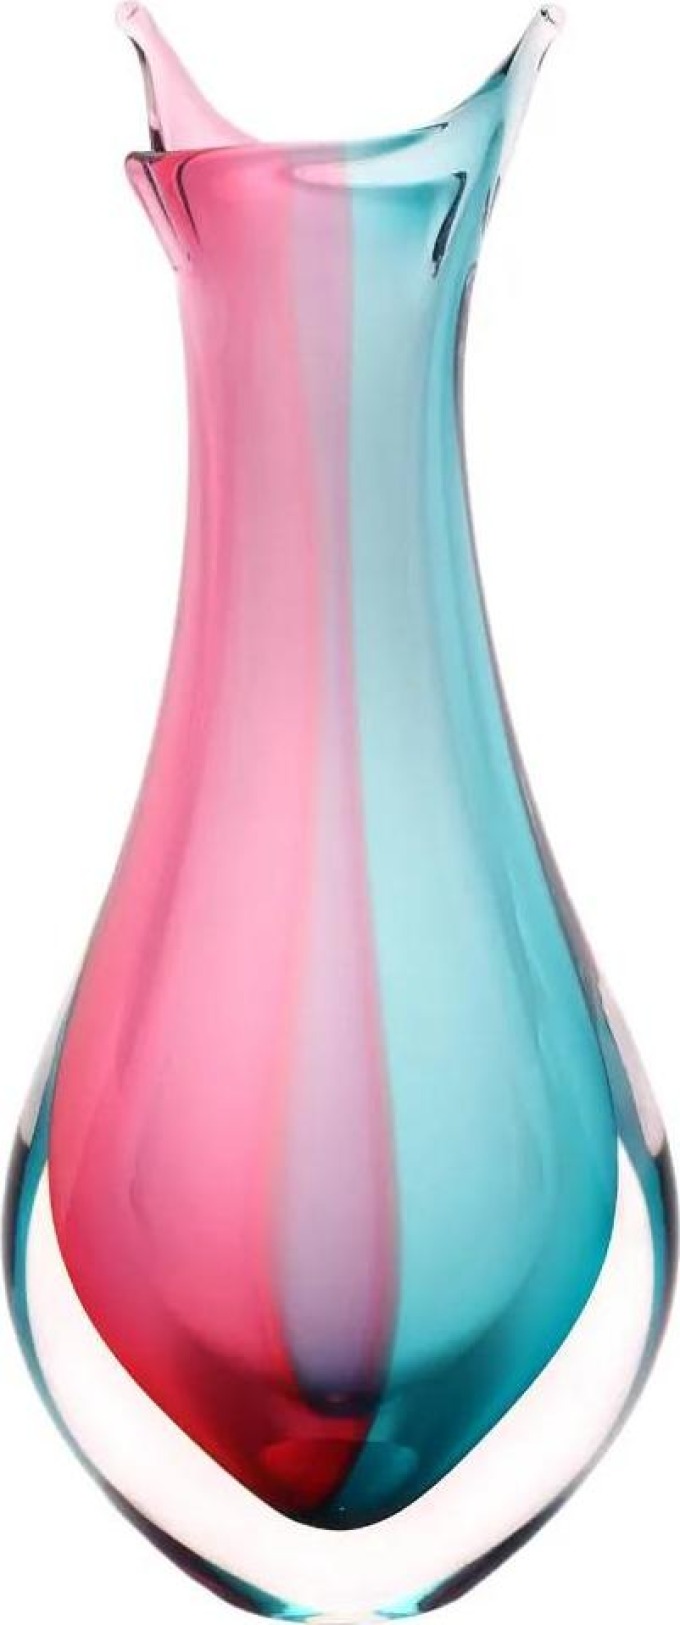 Skleněná váza hutní 09, růžová a tyrkysová, 26 cm | České hutní sklo od Artcristal Bohemia